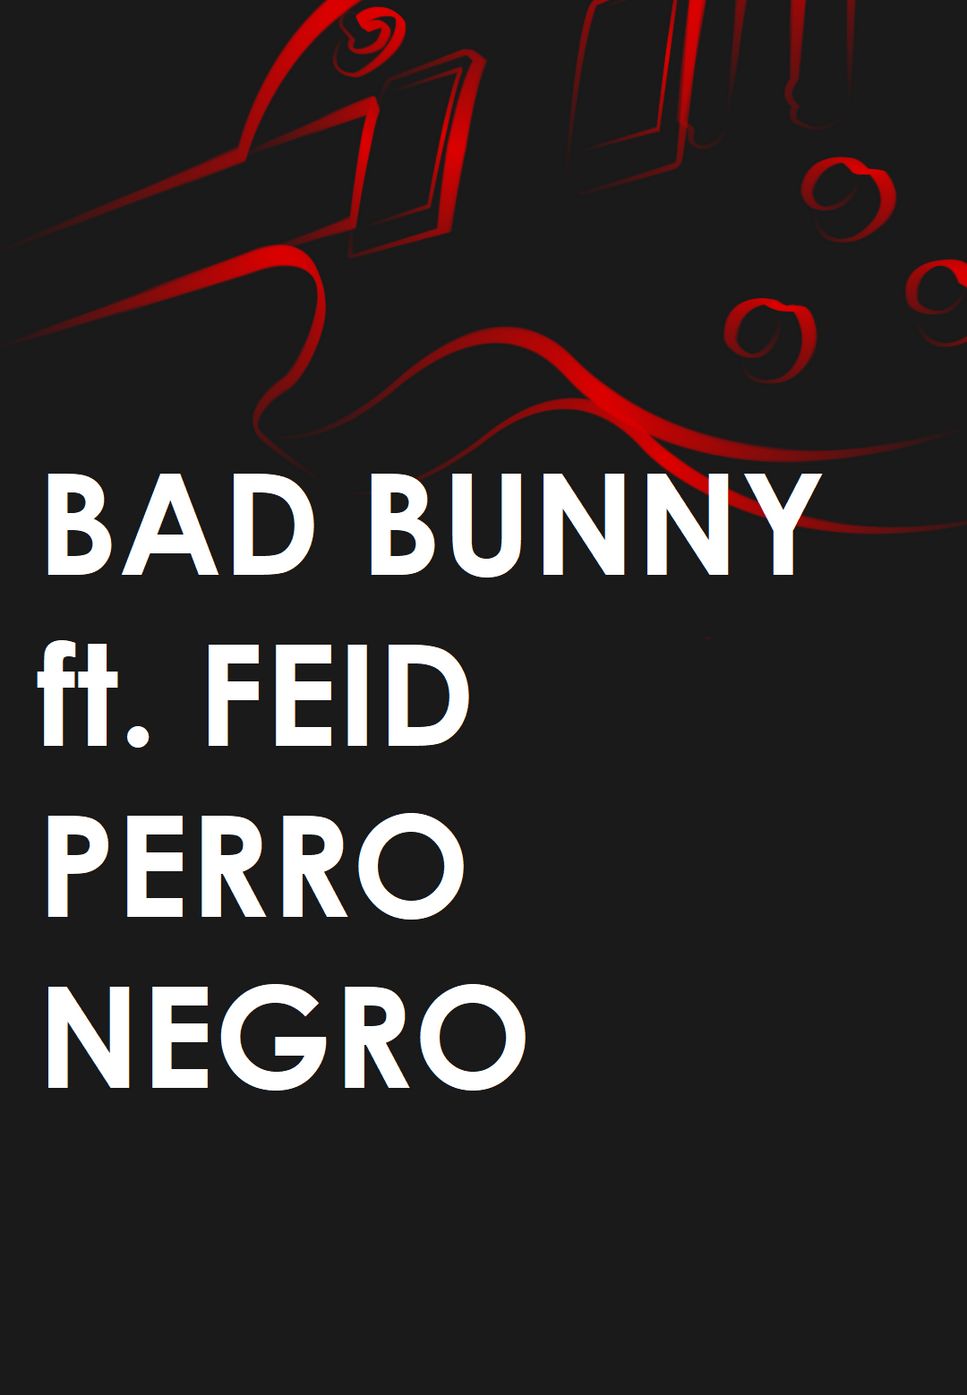 BAD BUNNY ft. FEID - PERRO NEGRO by Mario Serrato